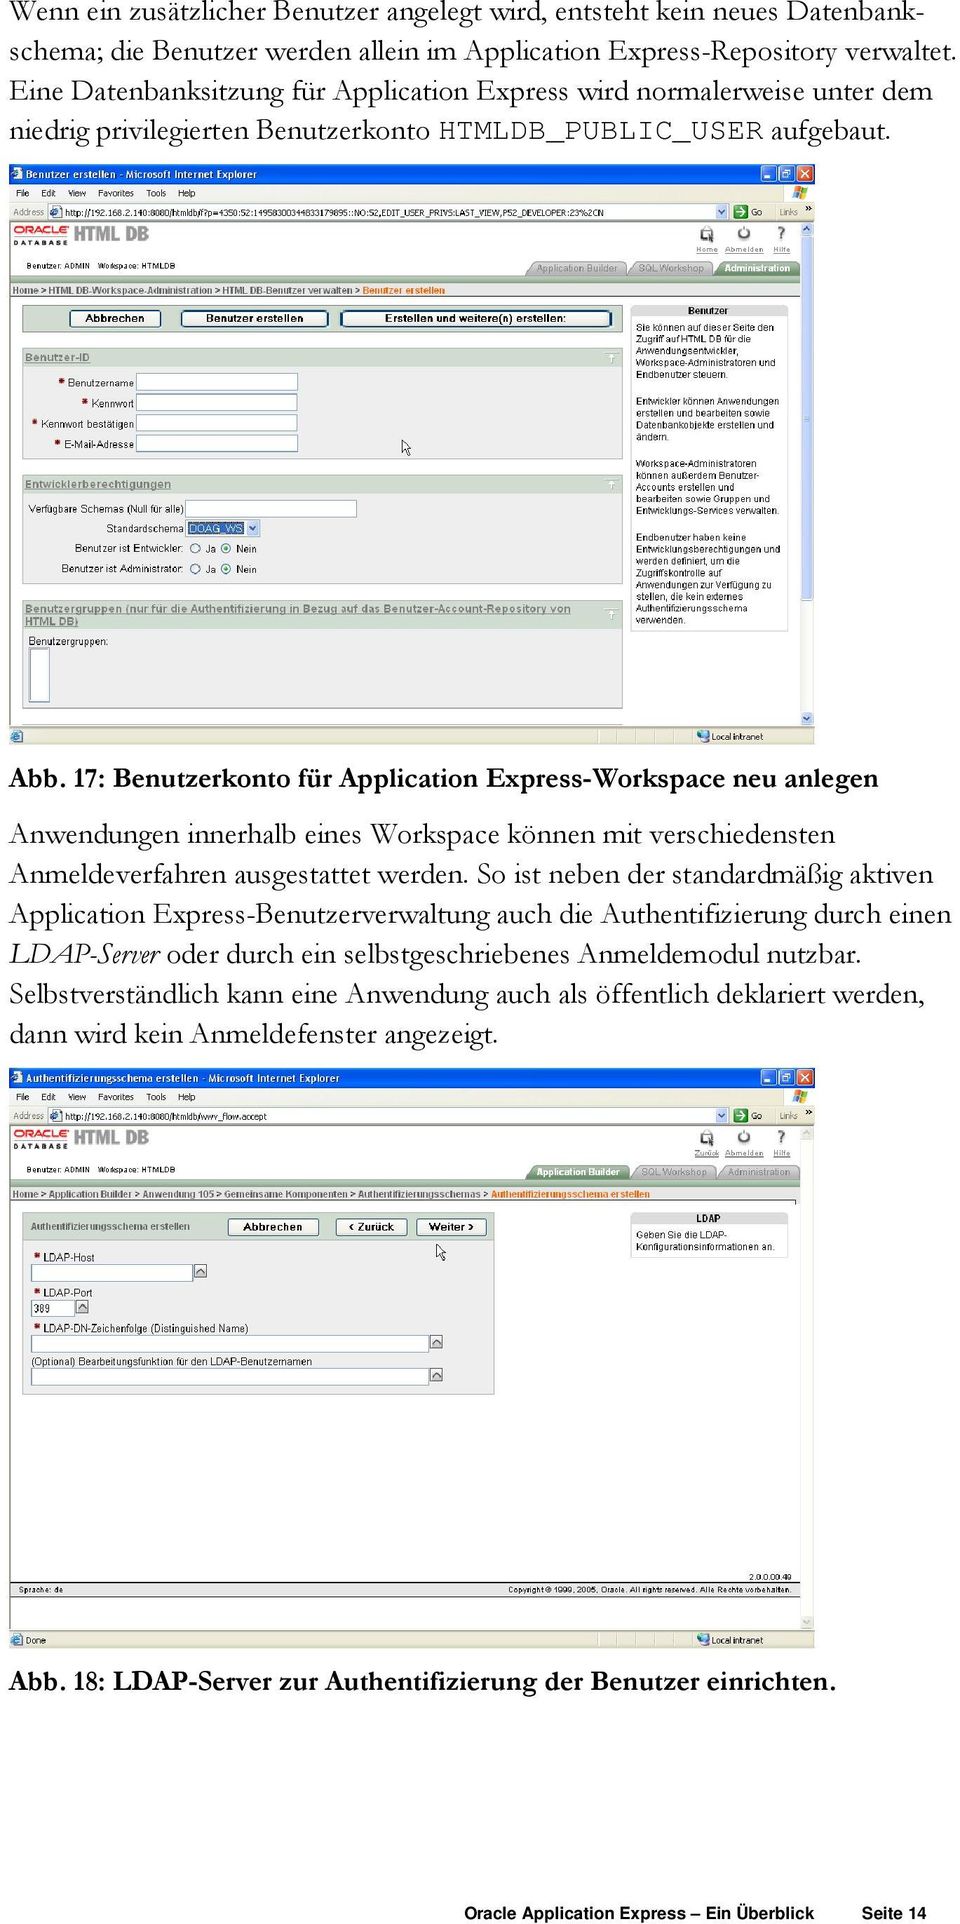 17: Benutzerkonto für Application Express-Workspace neu anlegen Anwendungen innerhalb eines Workspace können mit verschiedensten Anmeldeverfahren ausgestattet werden.